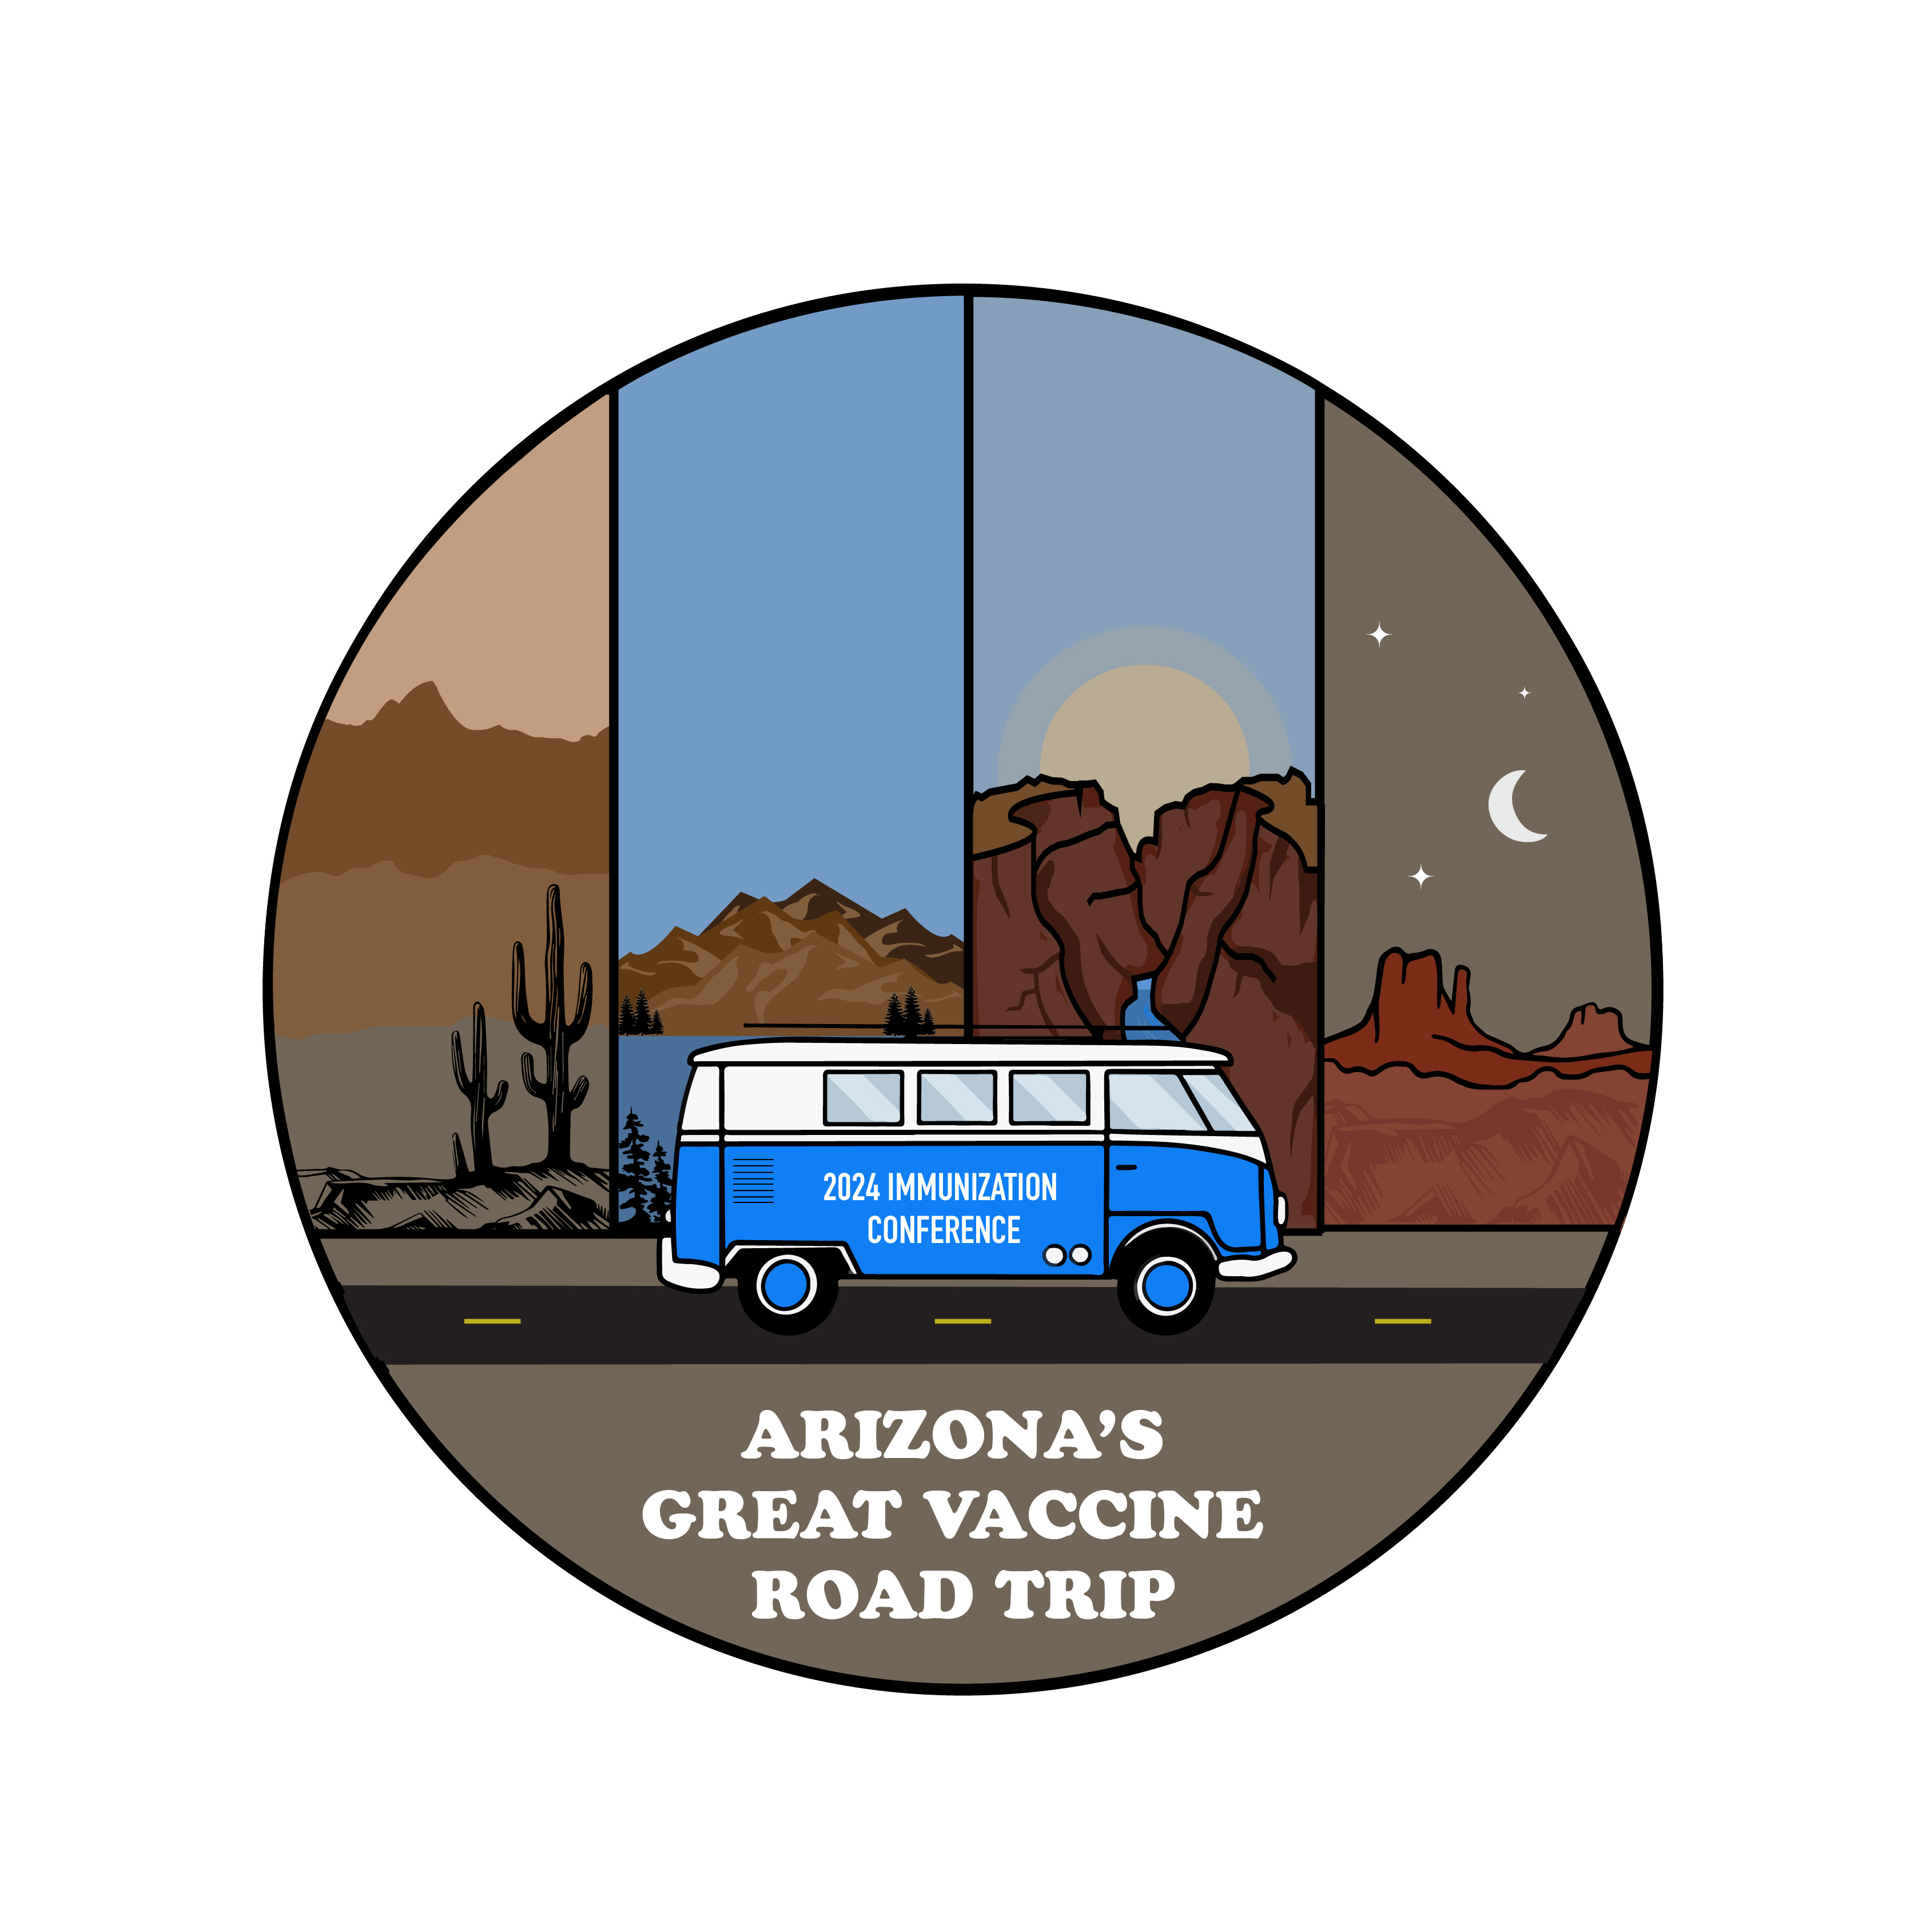 Arizona's Great Vaccine Road Trip